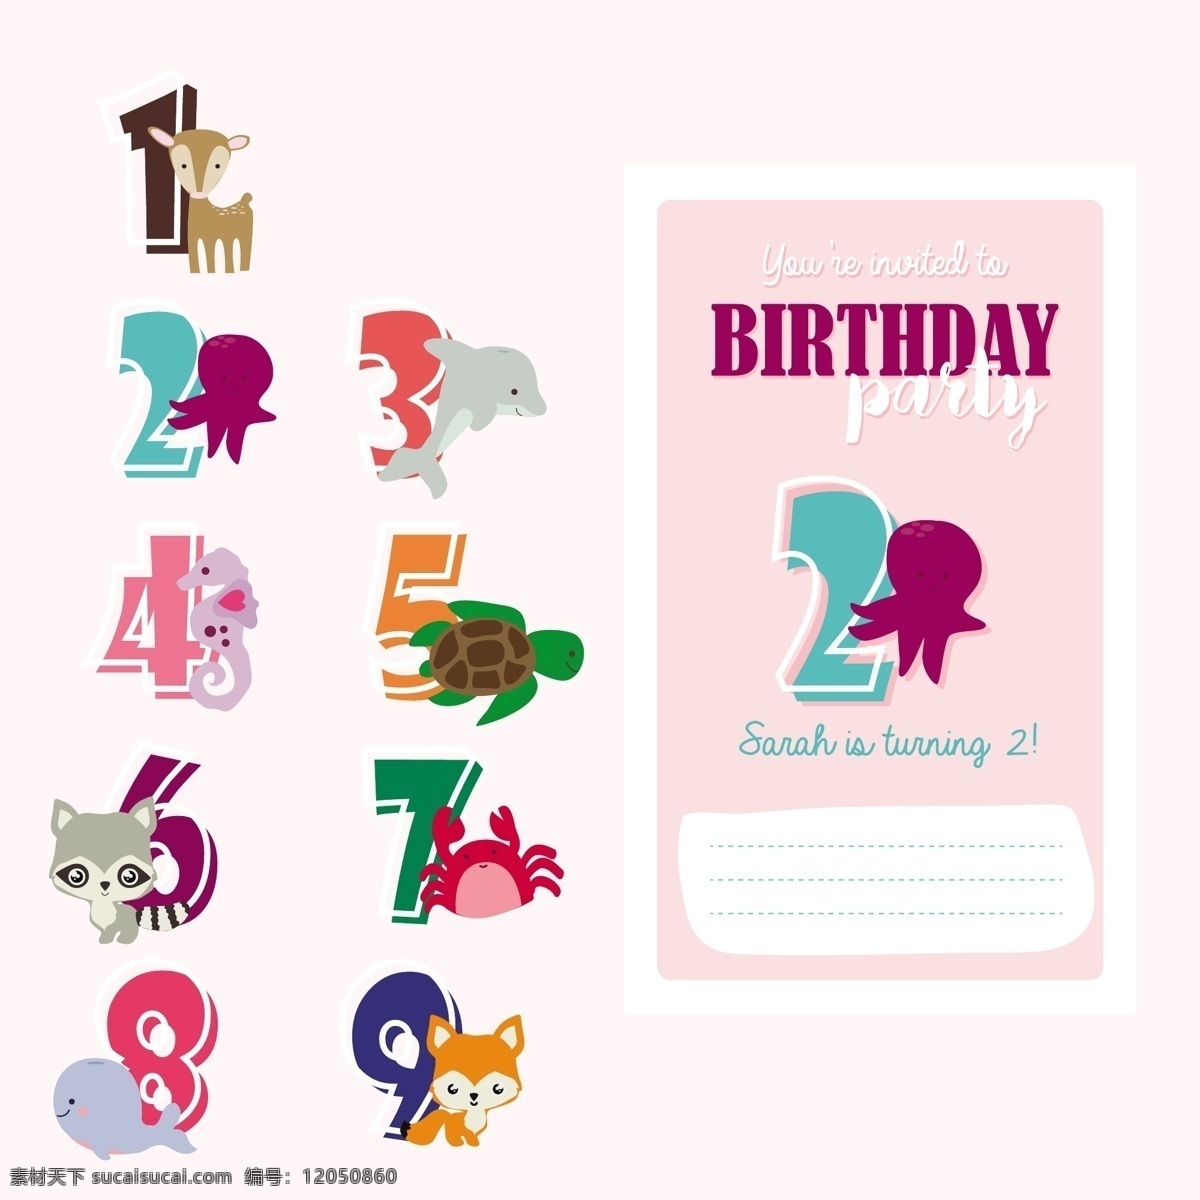 生日卡的设计 生日 请柬 生日快乐 派对 卡片 图案 动物 可爱 颜色 快乐 庆典 号码 生日卡 生日礼物 生日邀请 派对邀请 生日派对